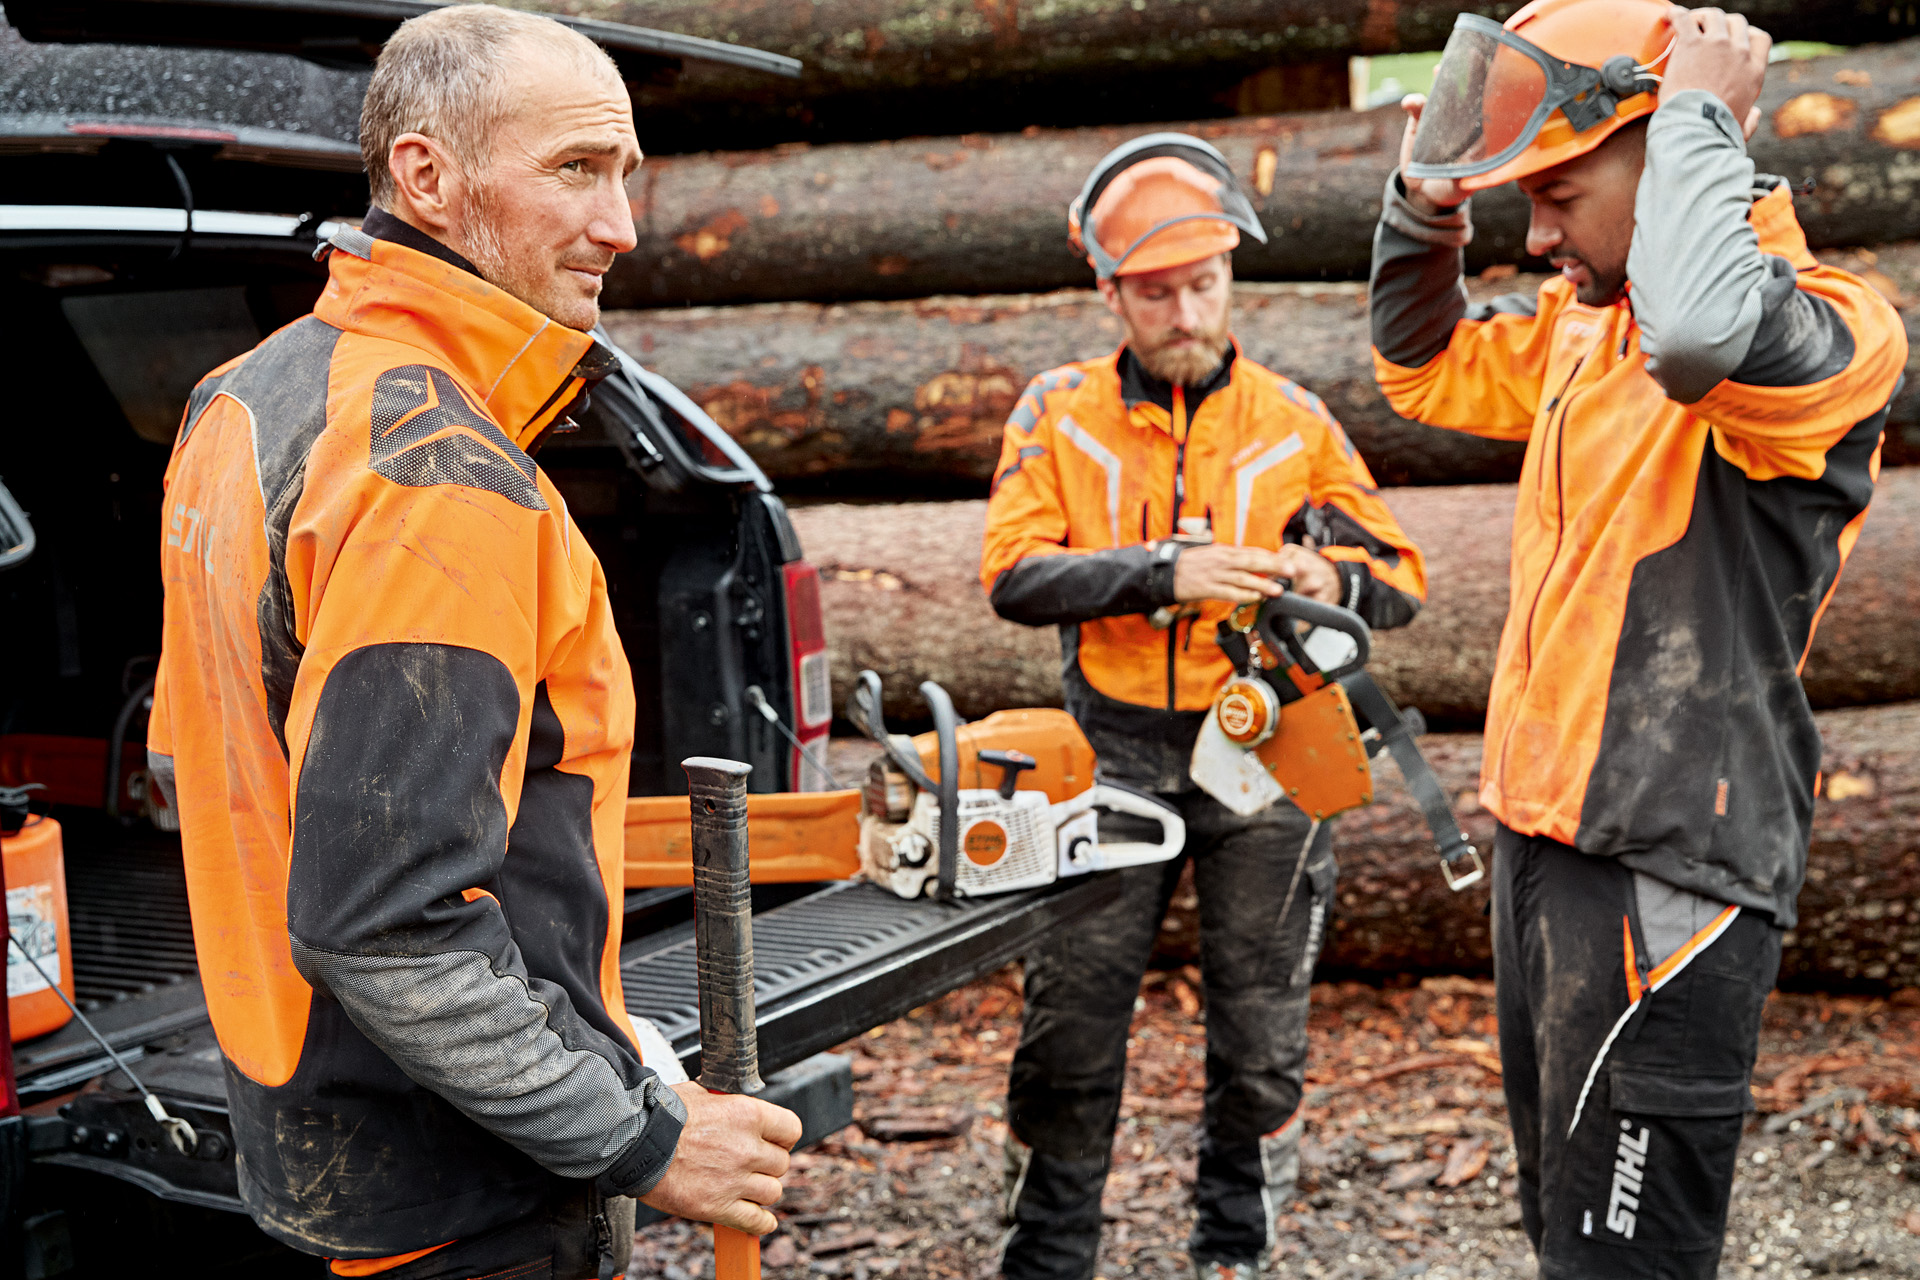 Drie mannen in STIHL veiligheidskleding staan voor een stapel hout en bereiden zich voor om te werken met een STIHL kettingzaag